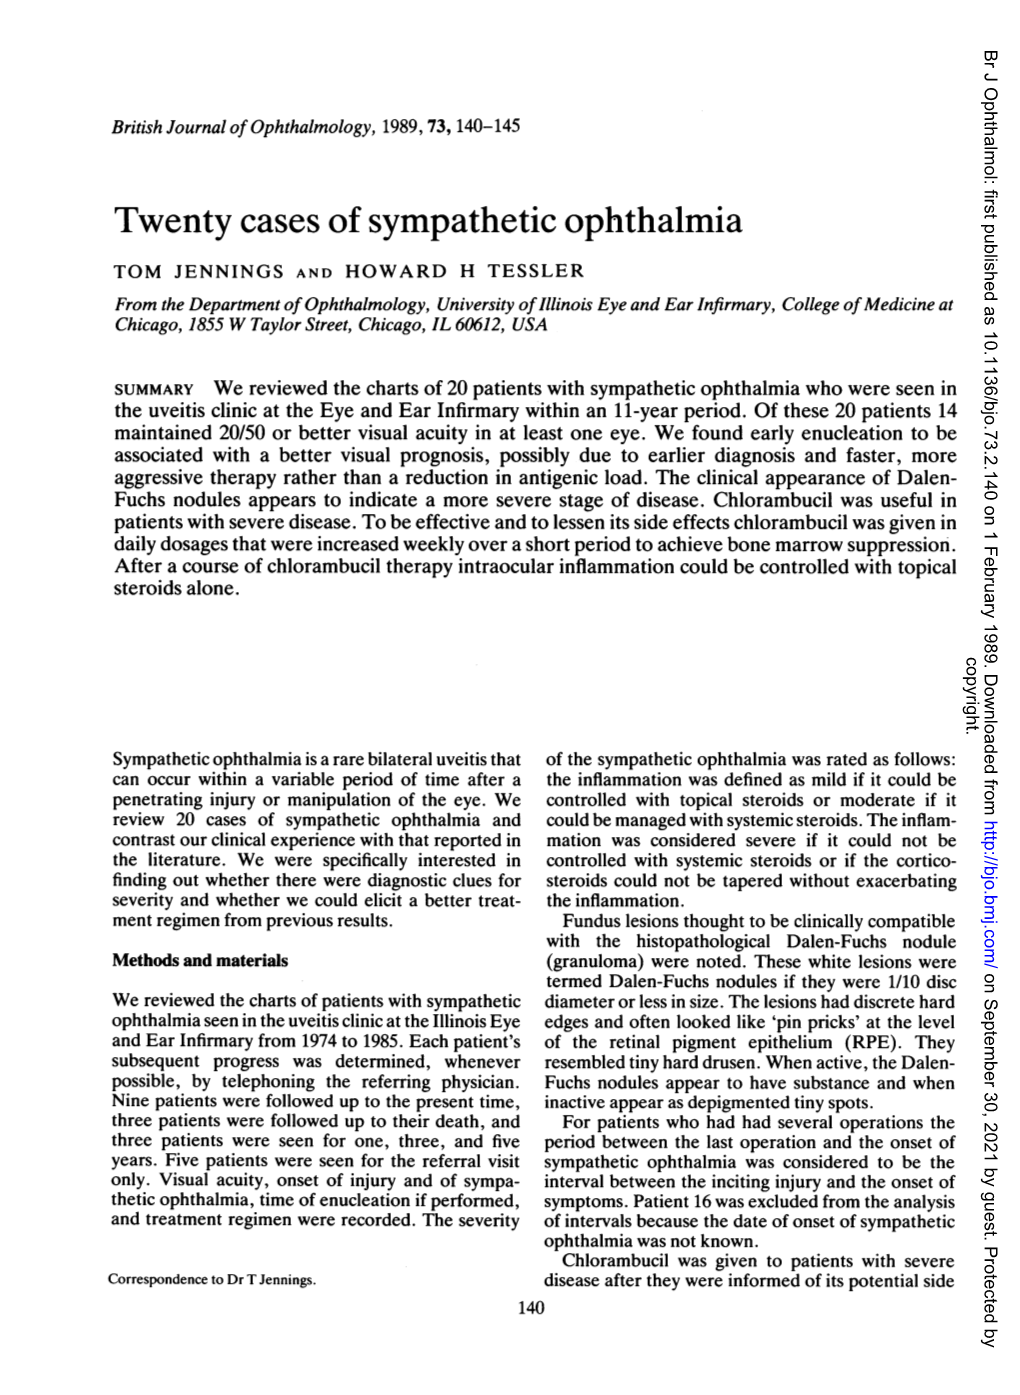 Twenty Cases of Sympathetic Ophthalmia